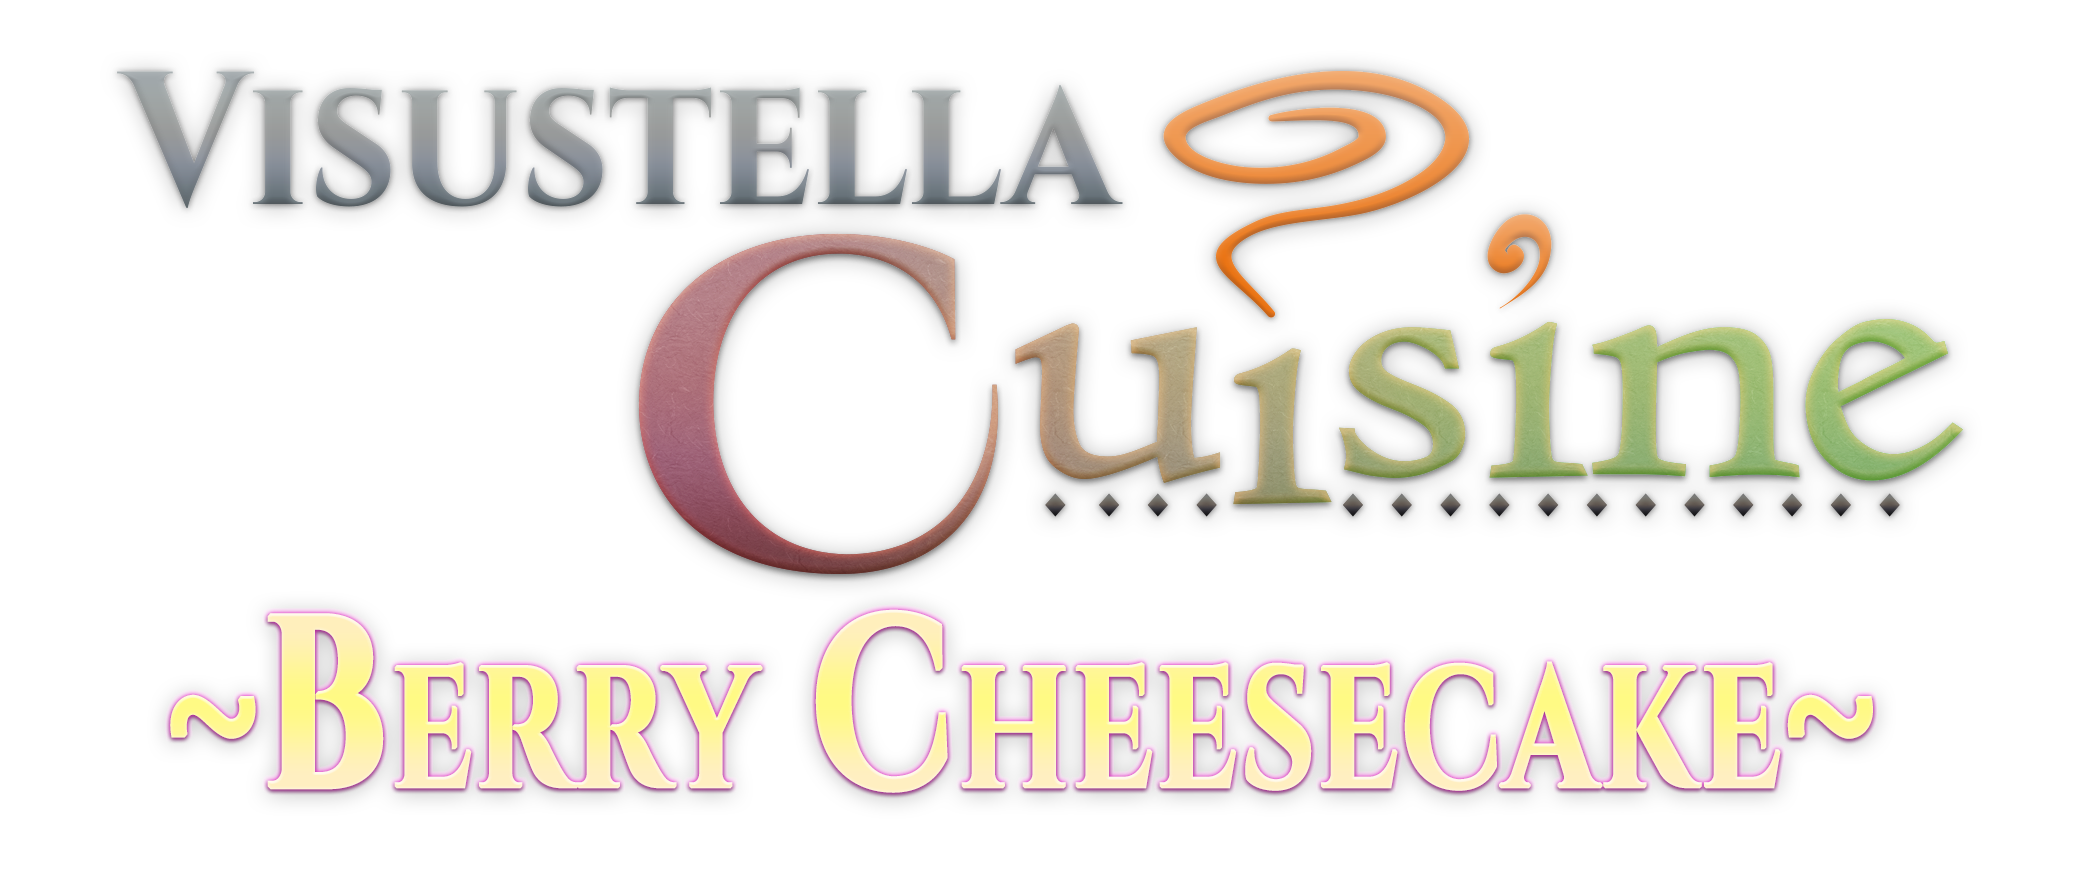 VisuStella Cuisine: Berry Cheesecake